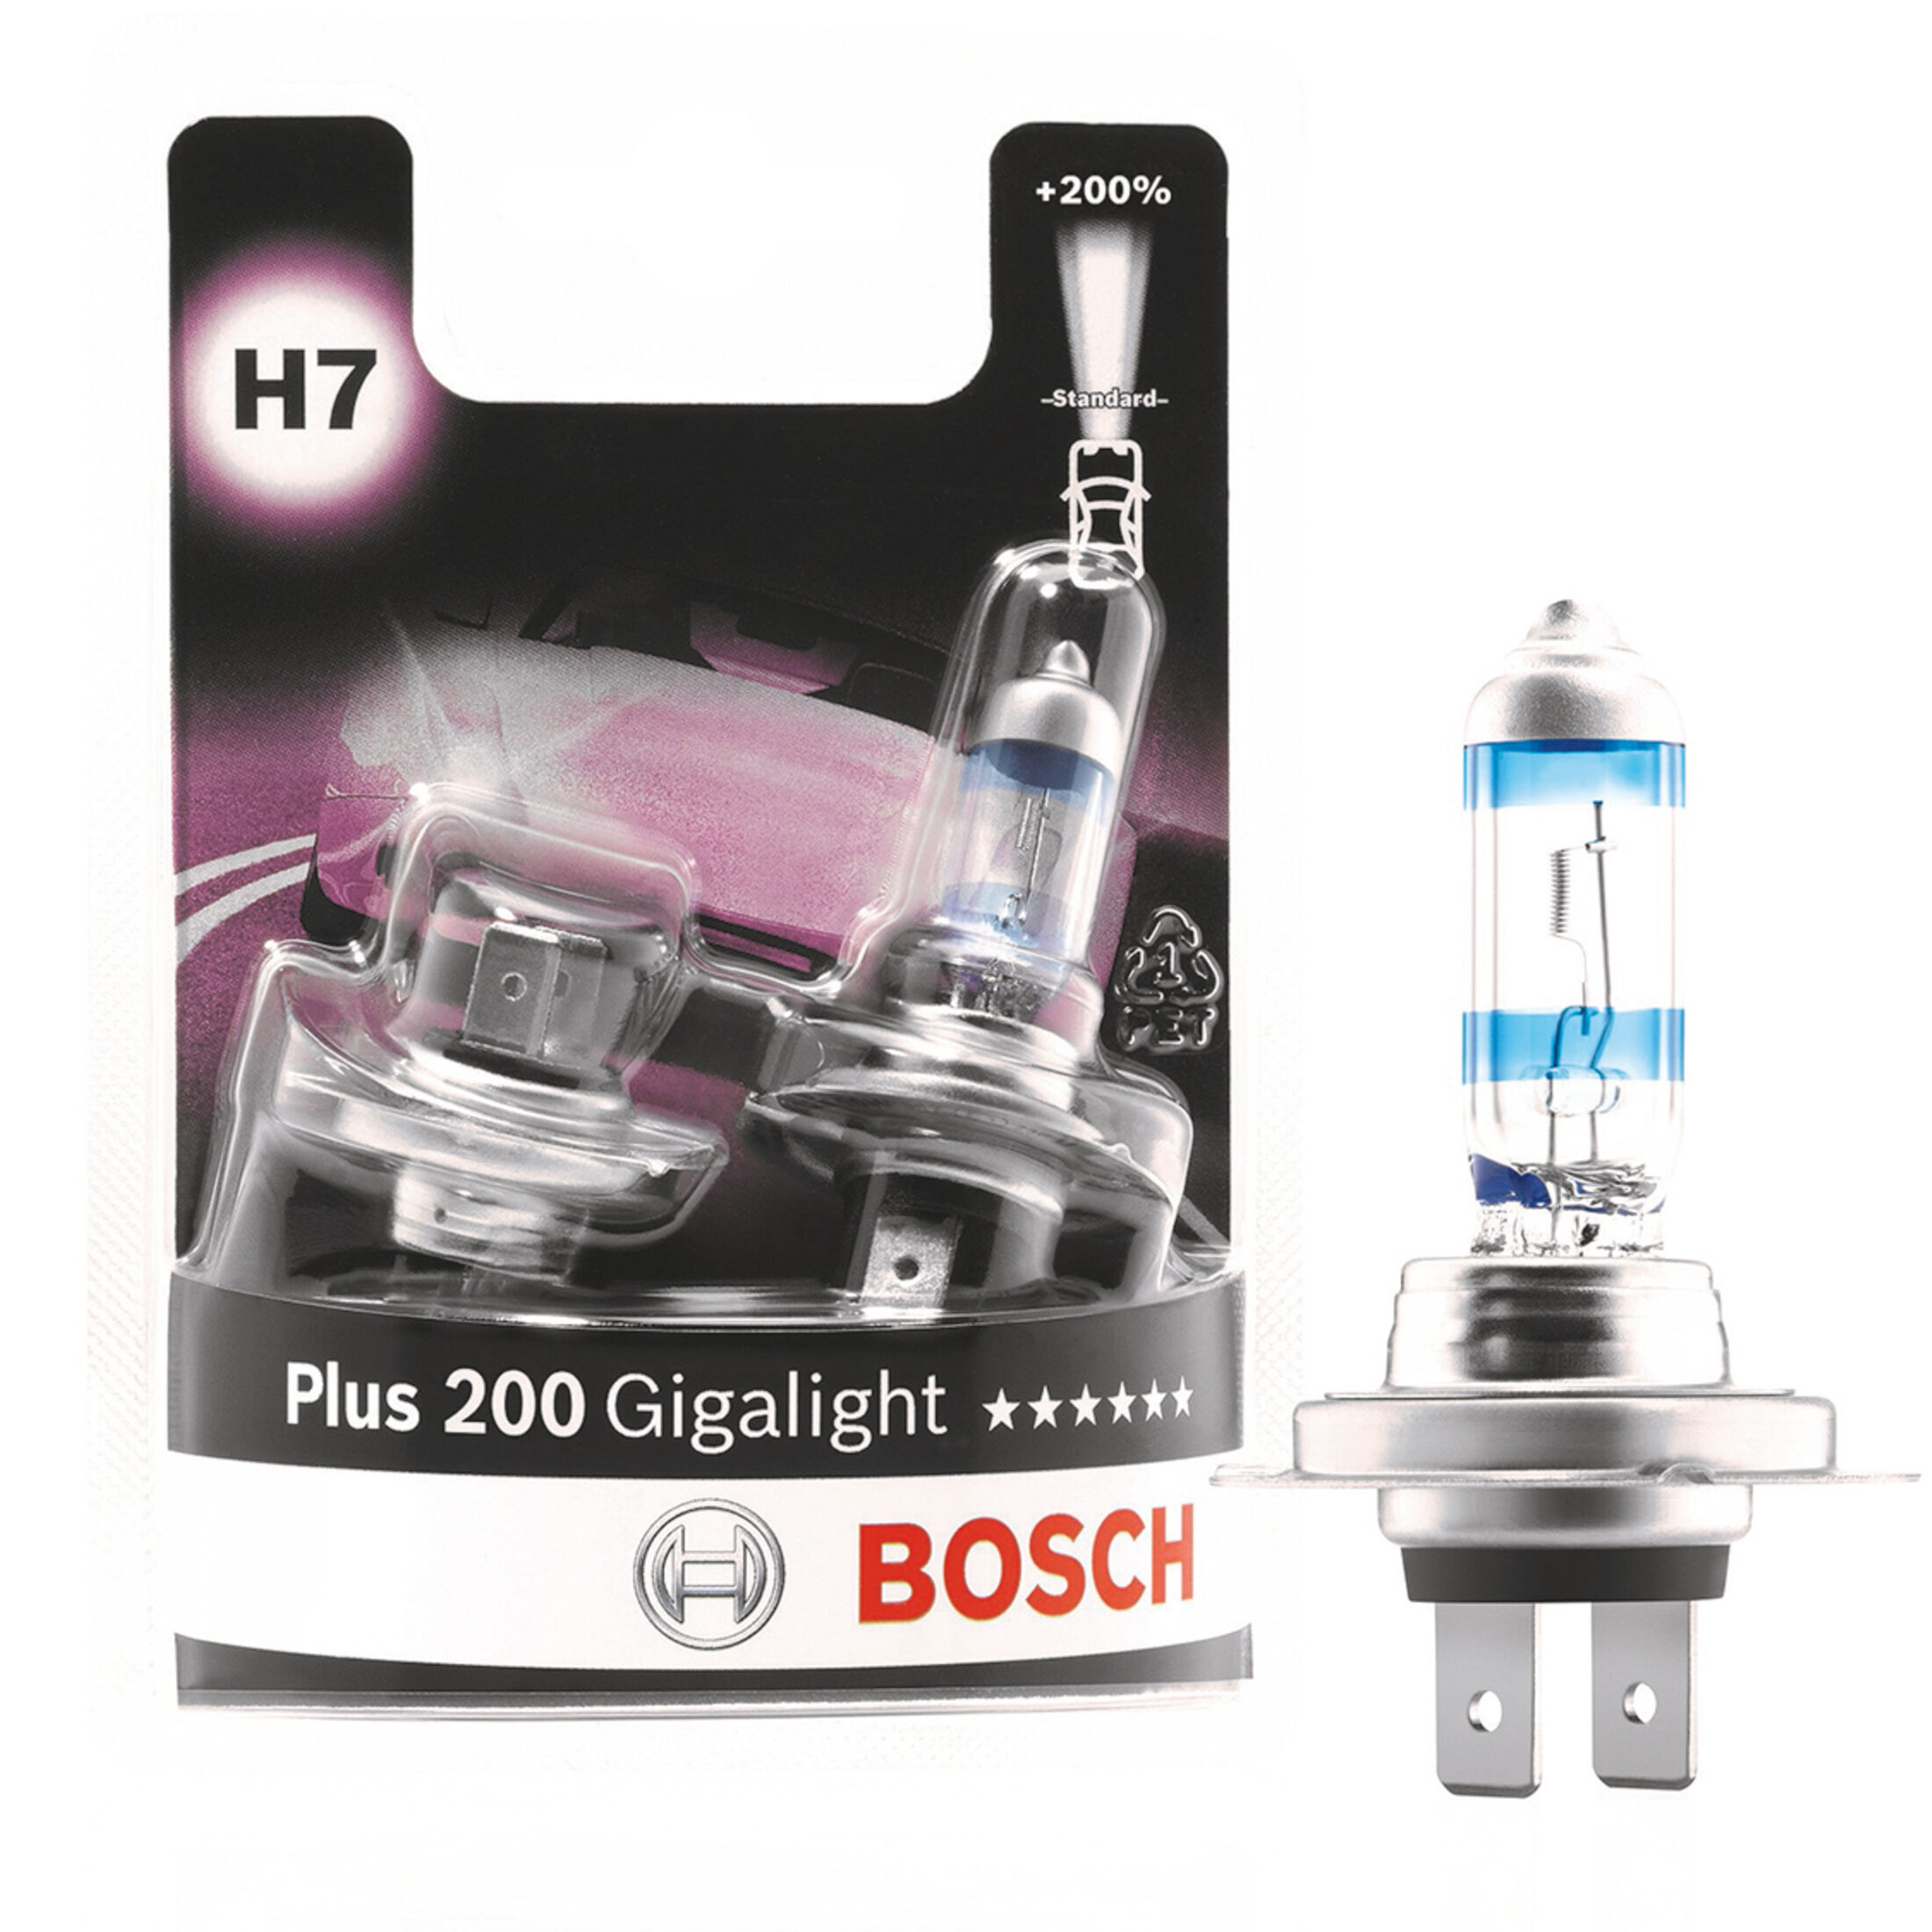 Bosch Plus 200 Gigalight als H7- und H4-Licht